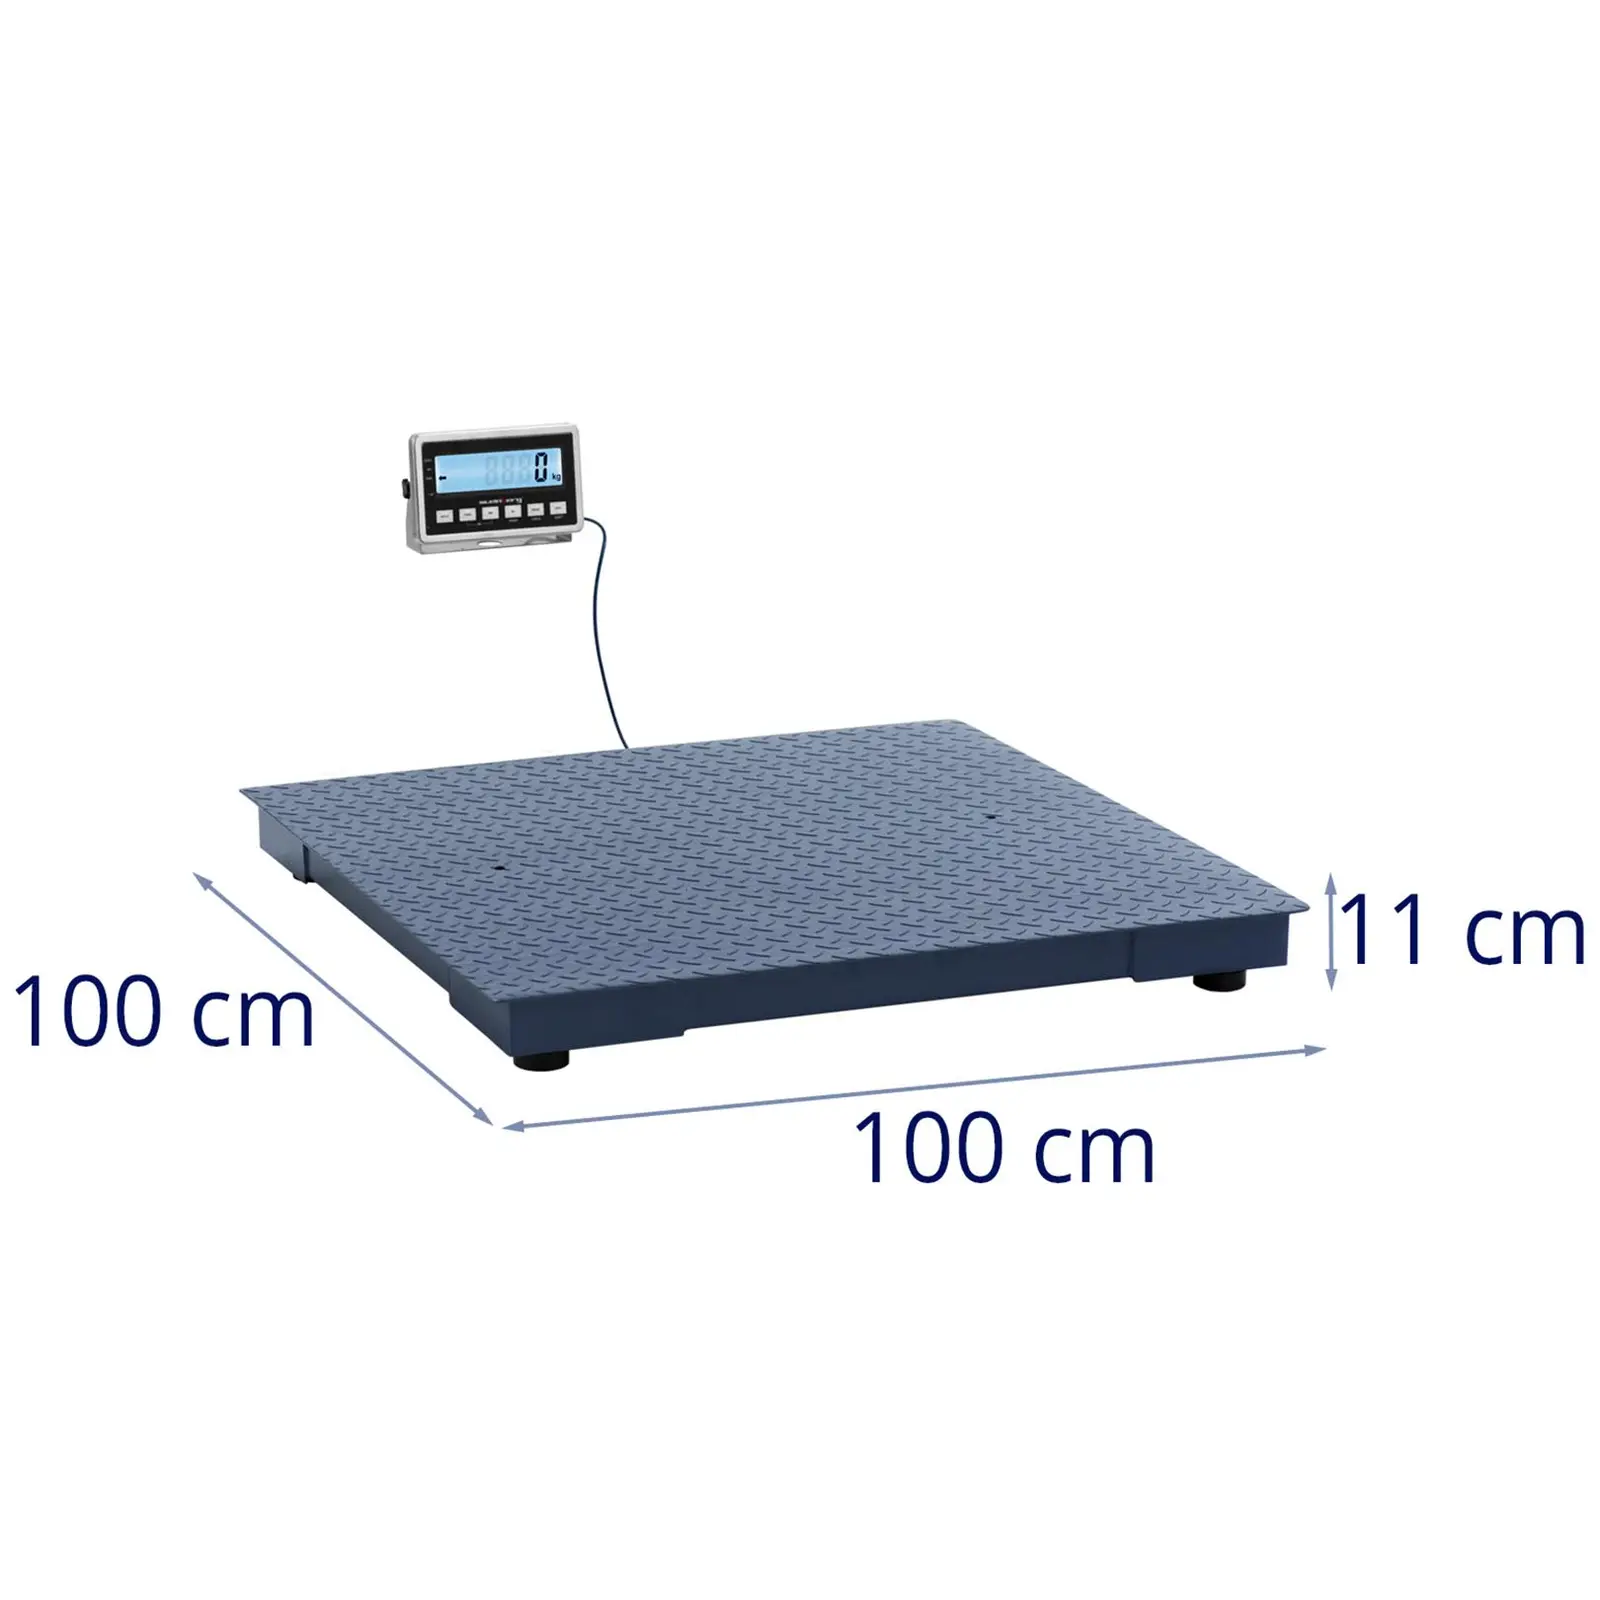 Gulvvægt - 3000 kg / 1 kg - 1000 x 1000 mm - LCD